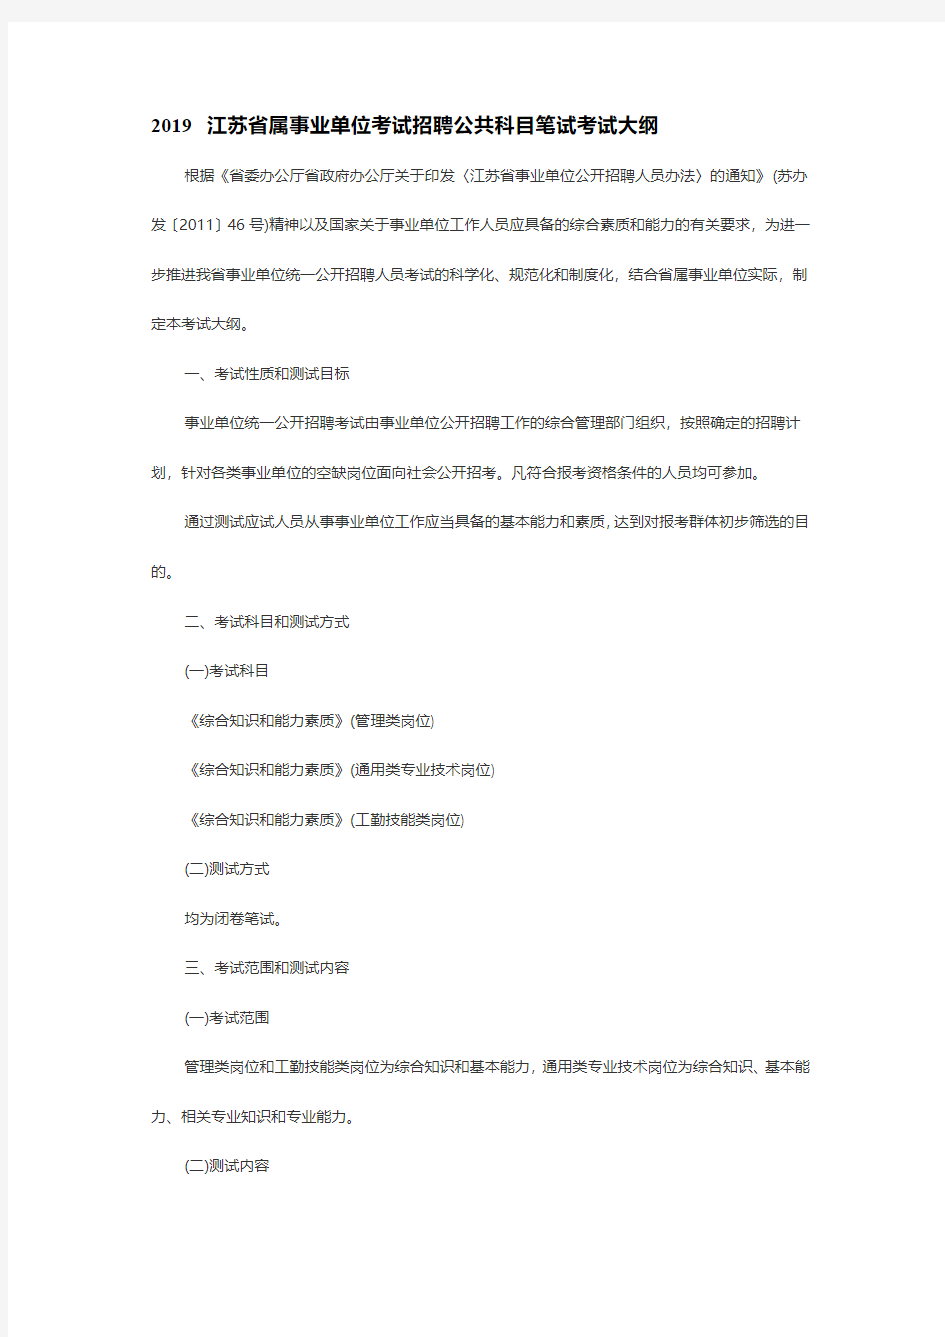 2019江苏省属事业单位考试招聘公共科目笔试考试大纲